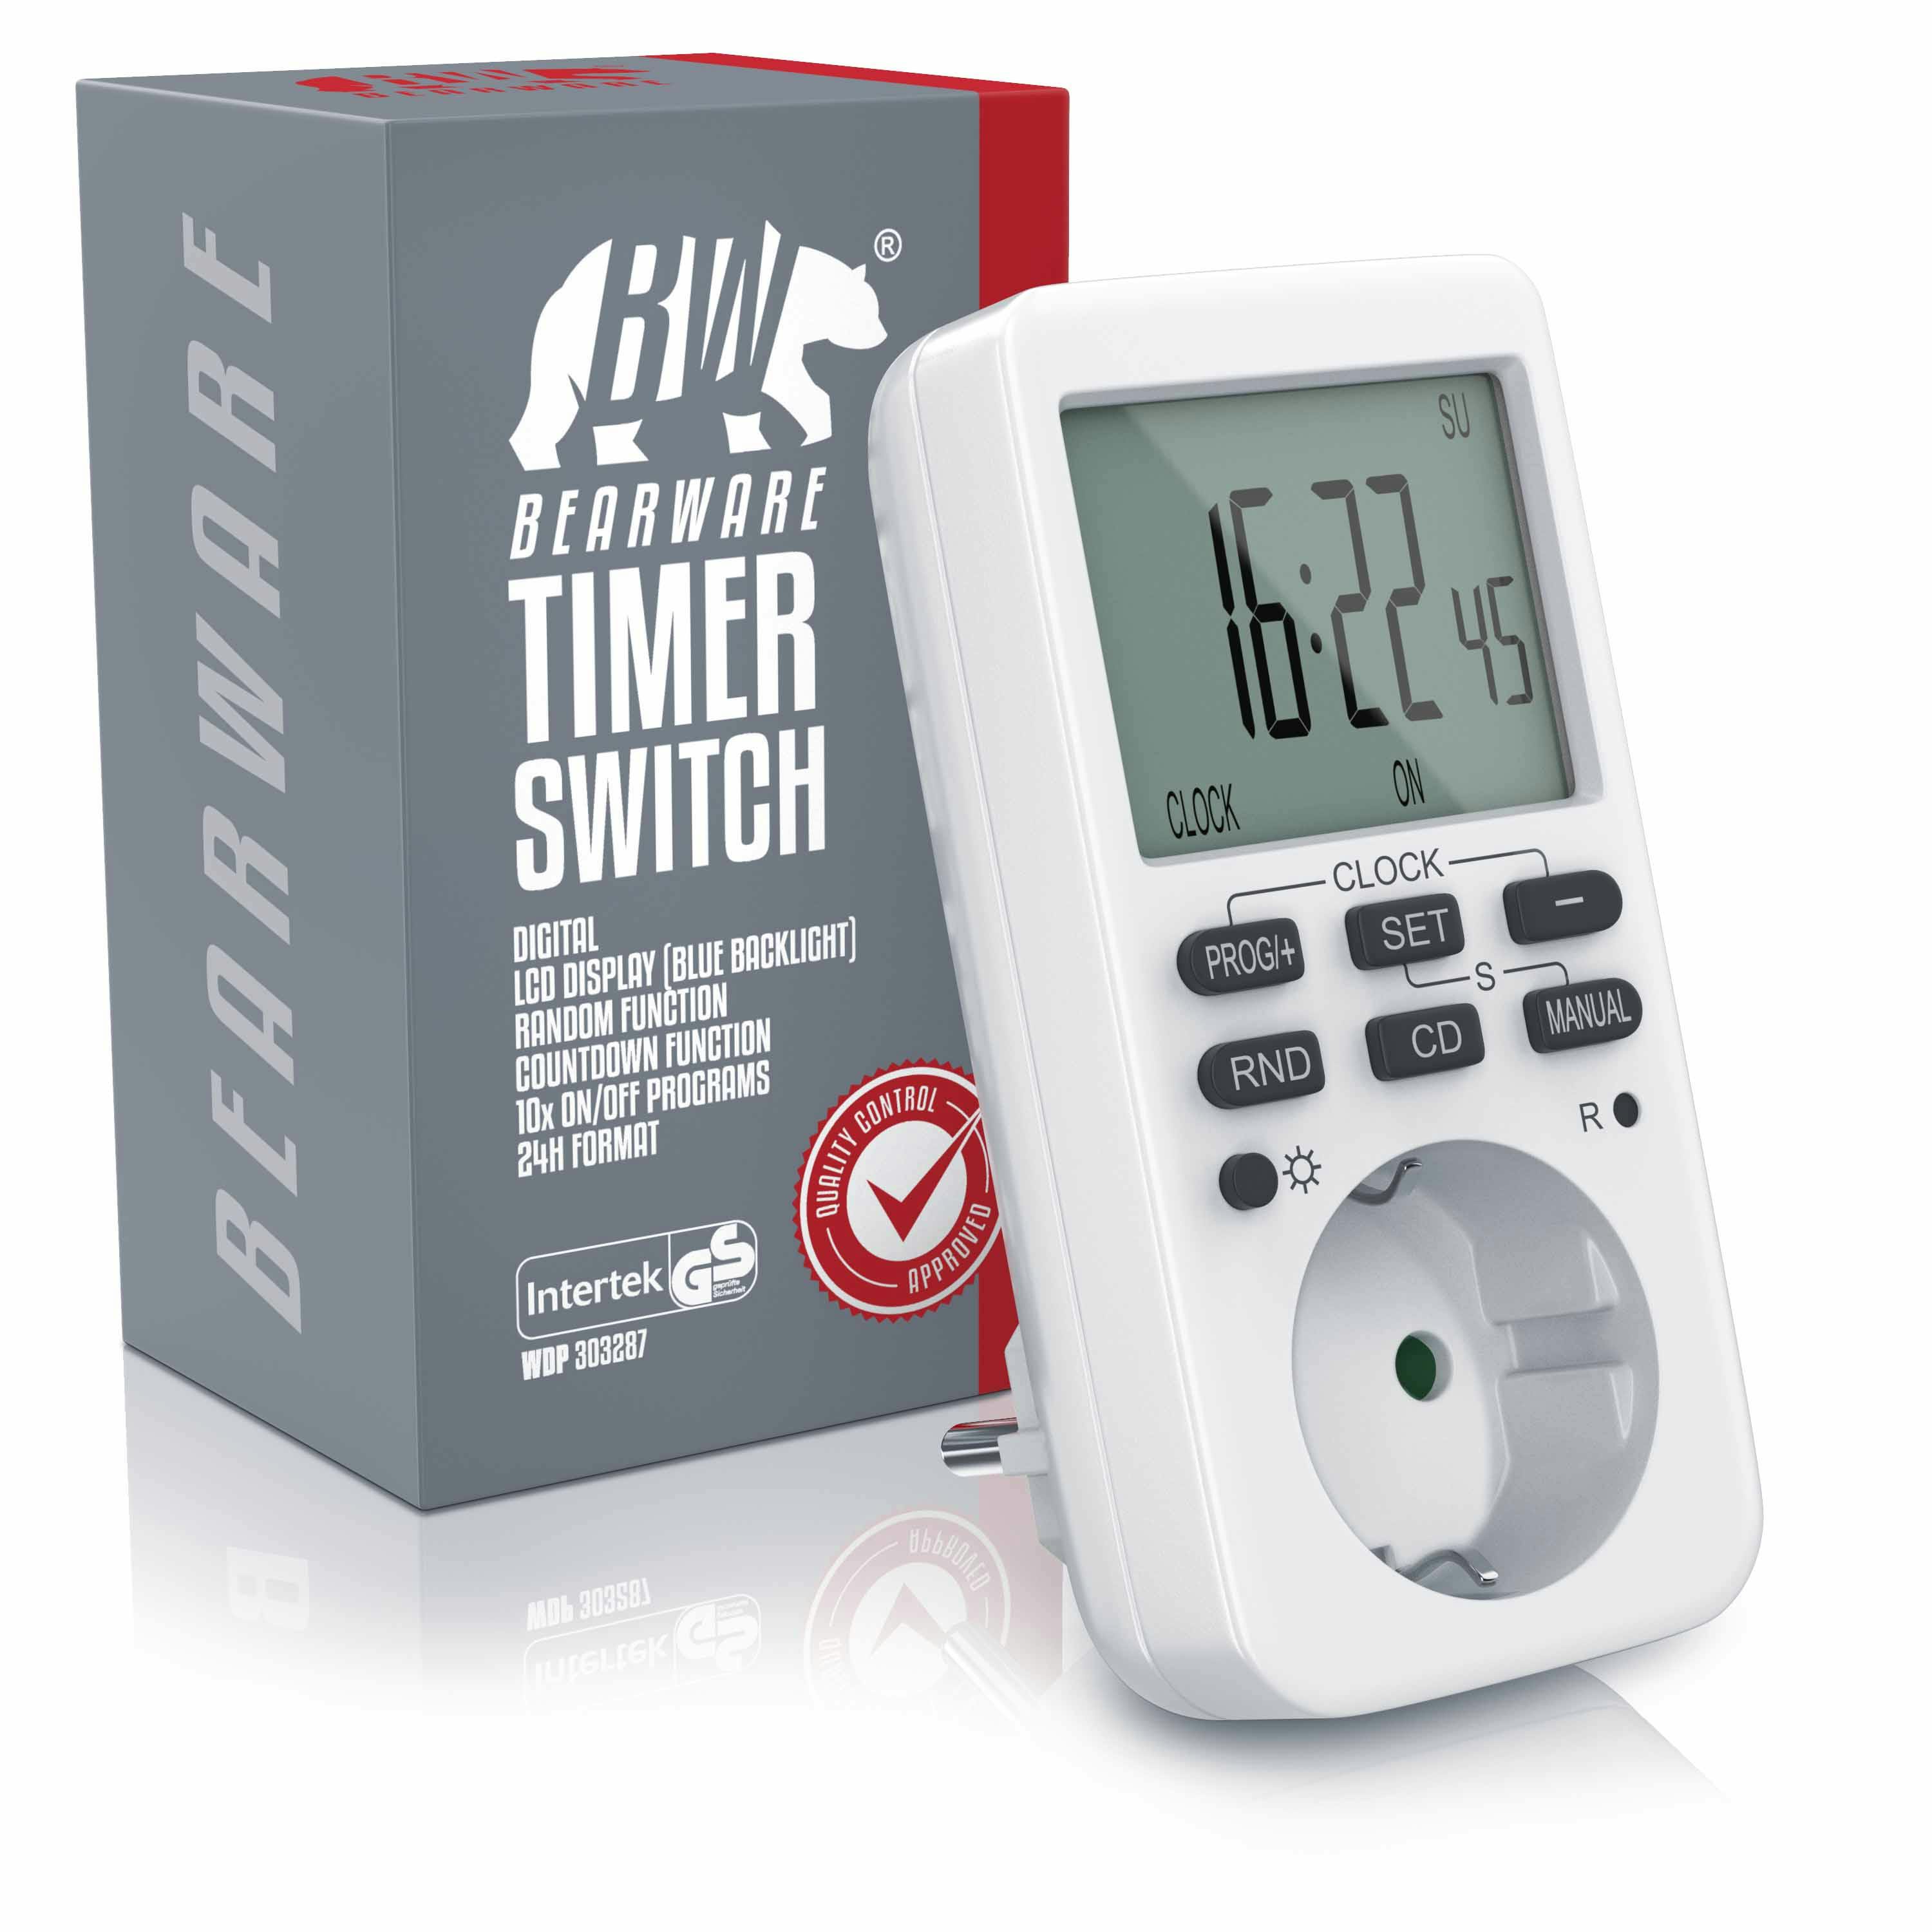 BEARWARE Zeitschaltuhr programmierbar mit LCD Display Steckdosen Timer / max  3680W